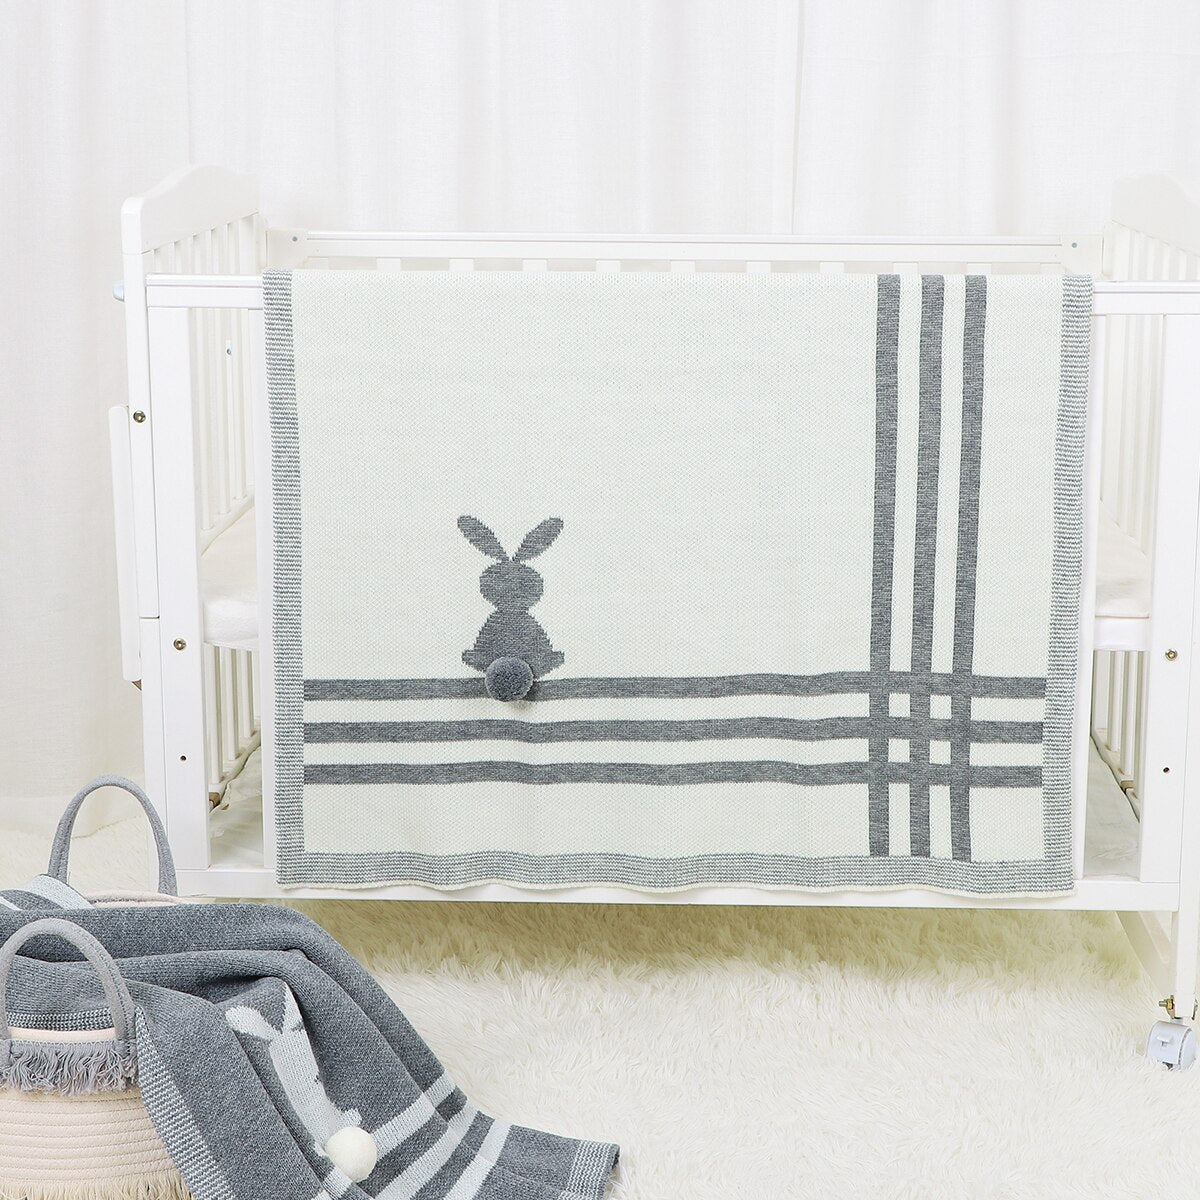 Baby Knitted Soft Sleep Blankets for Newborns, 100*80 cm - White, Grey, Beige.